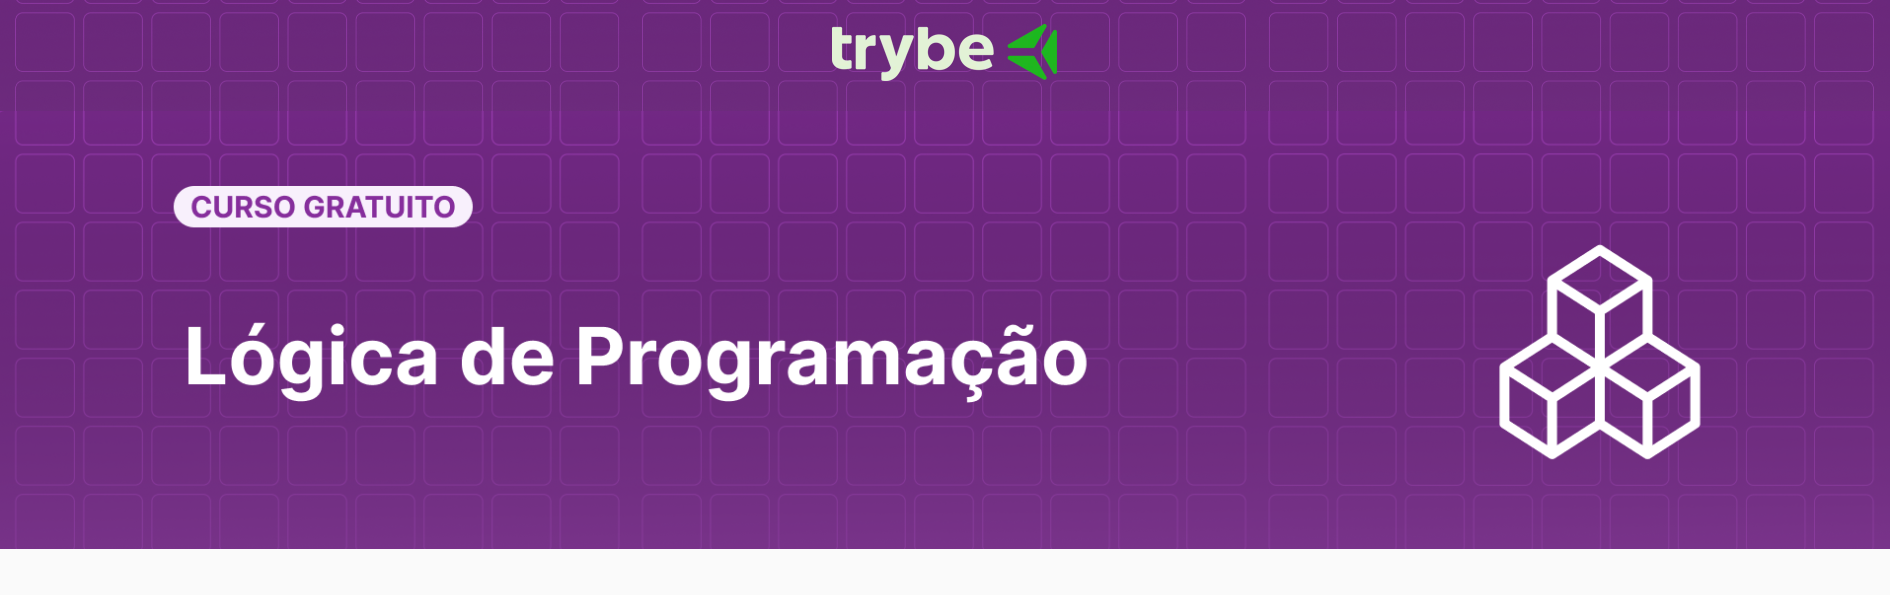 Lógica de Programação by Trybe